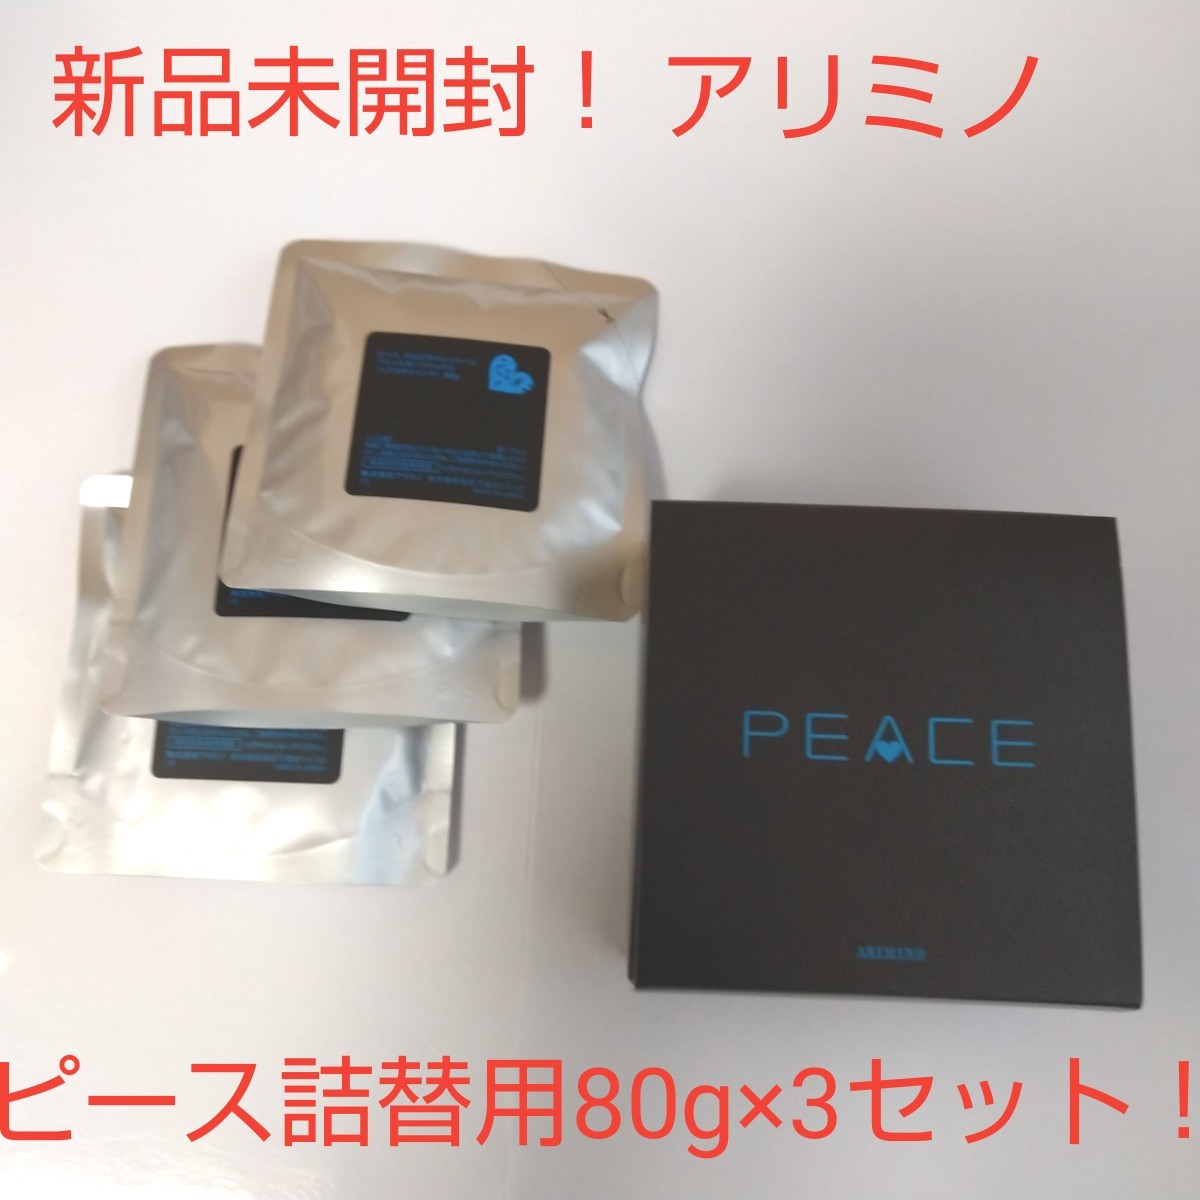 【新品未開封】アリミノ ピース ヘアワックス詰め替え用80g×3